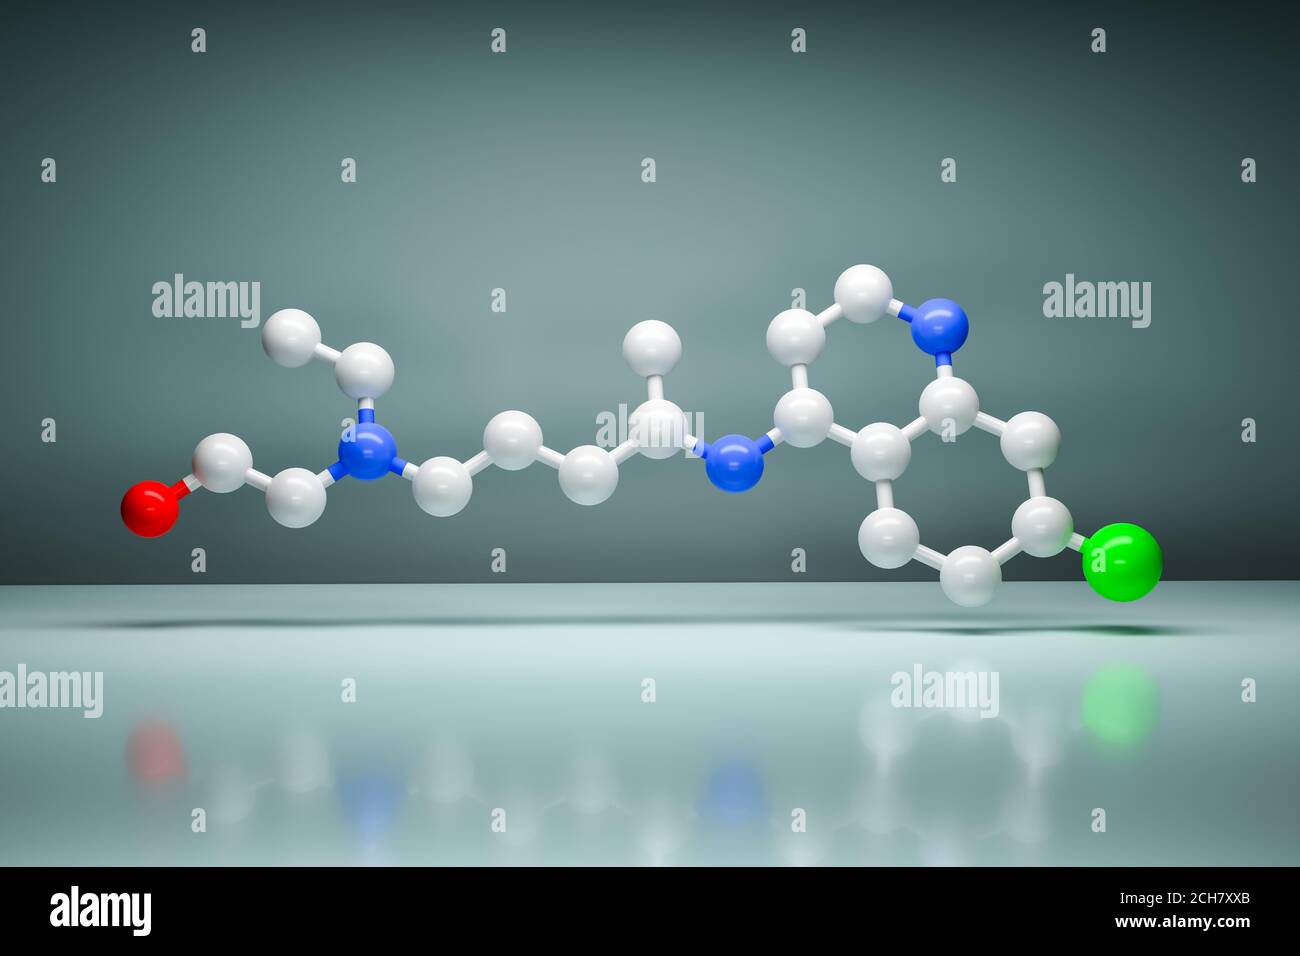 Modell eines Hydroxychloroquin-Moleküls. Kohlenstoff (weiß), Stickstoff (blau), Chlor (grün), Sauerstoff (rot). Es wird verwendet, um Malaria und m zu verhindern und zu behandeln Stockfoto